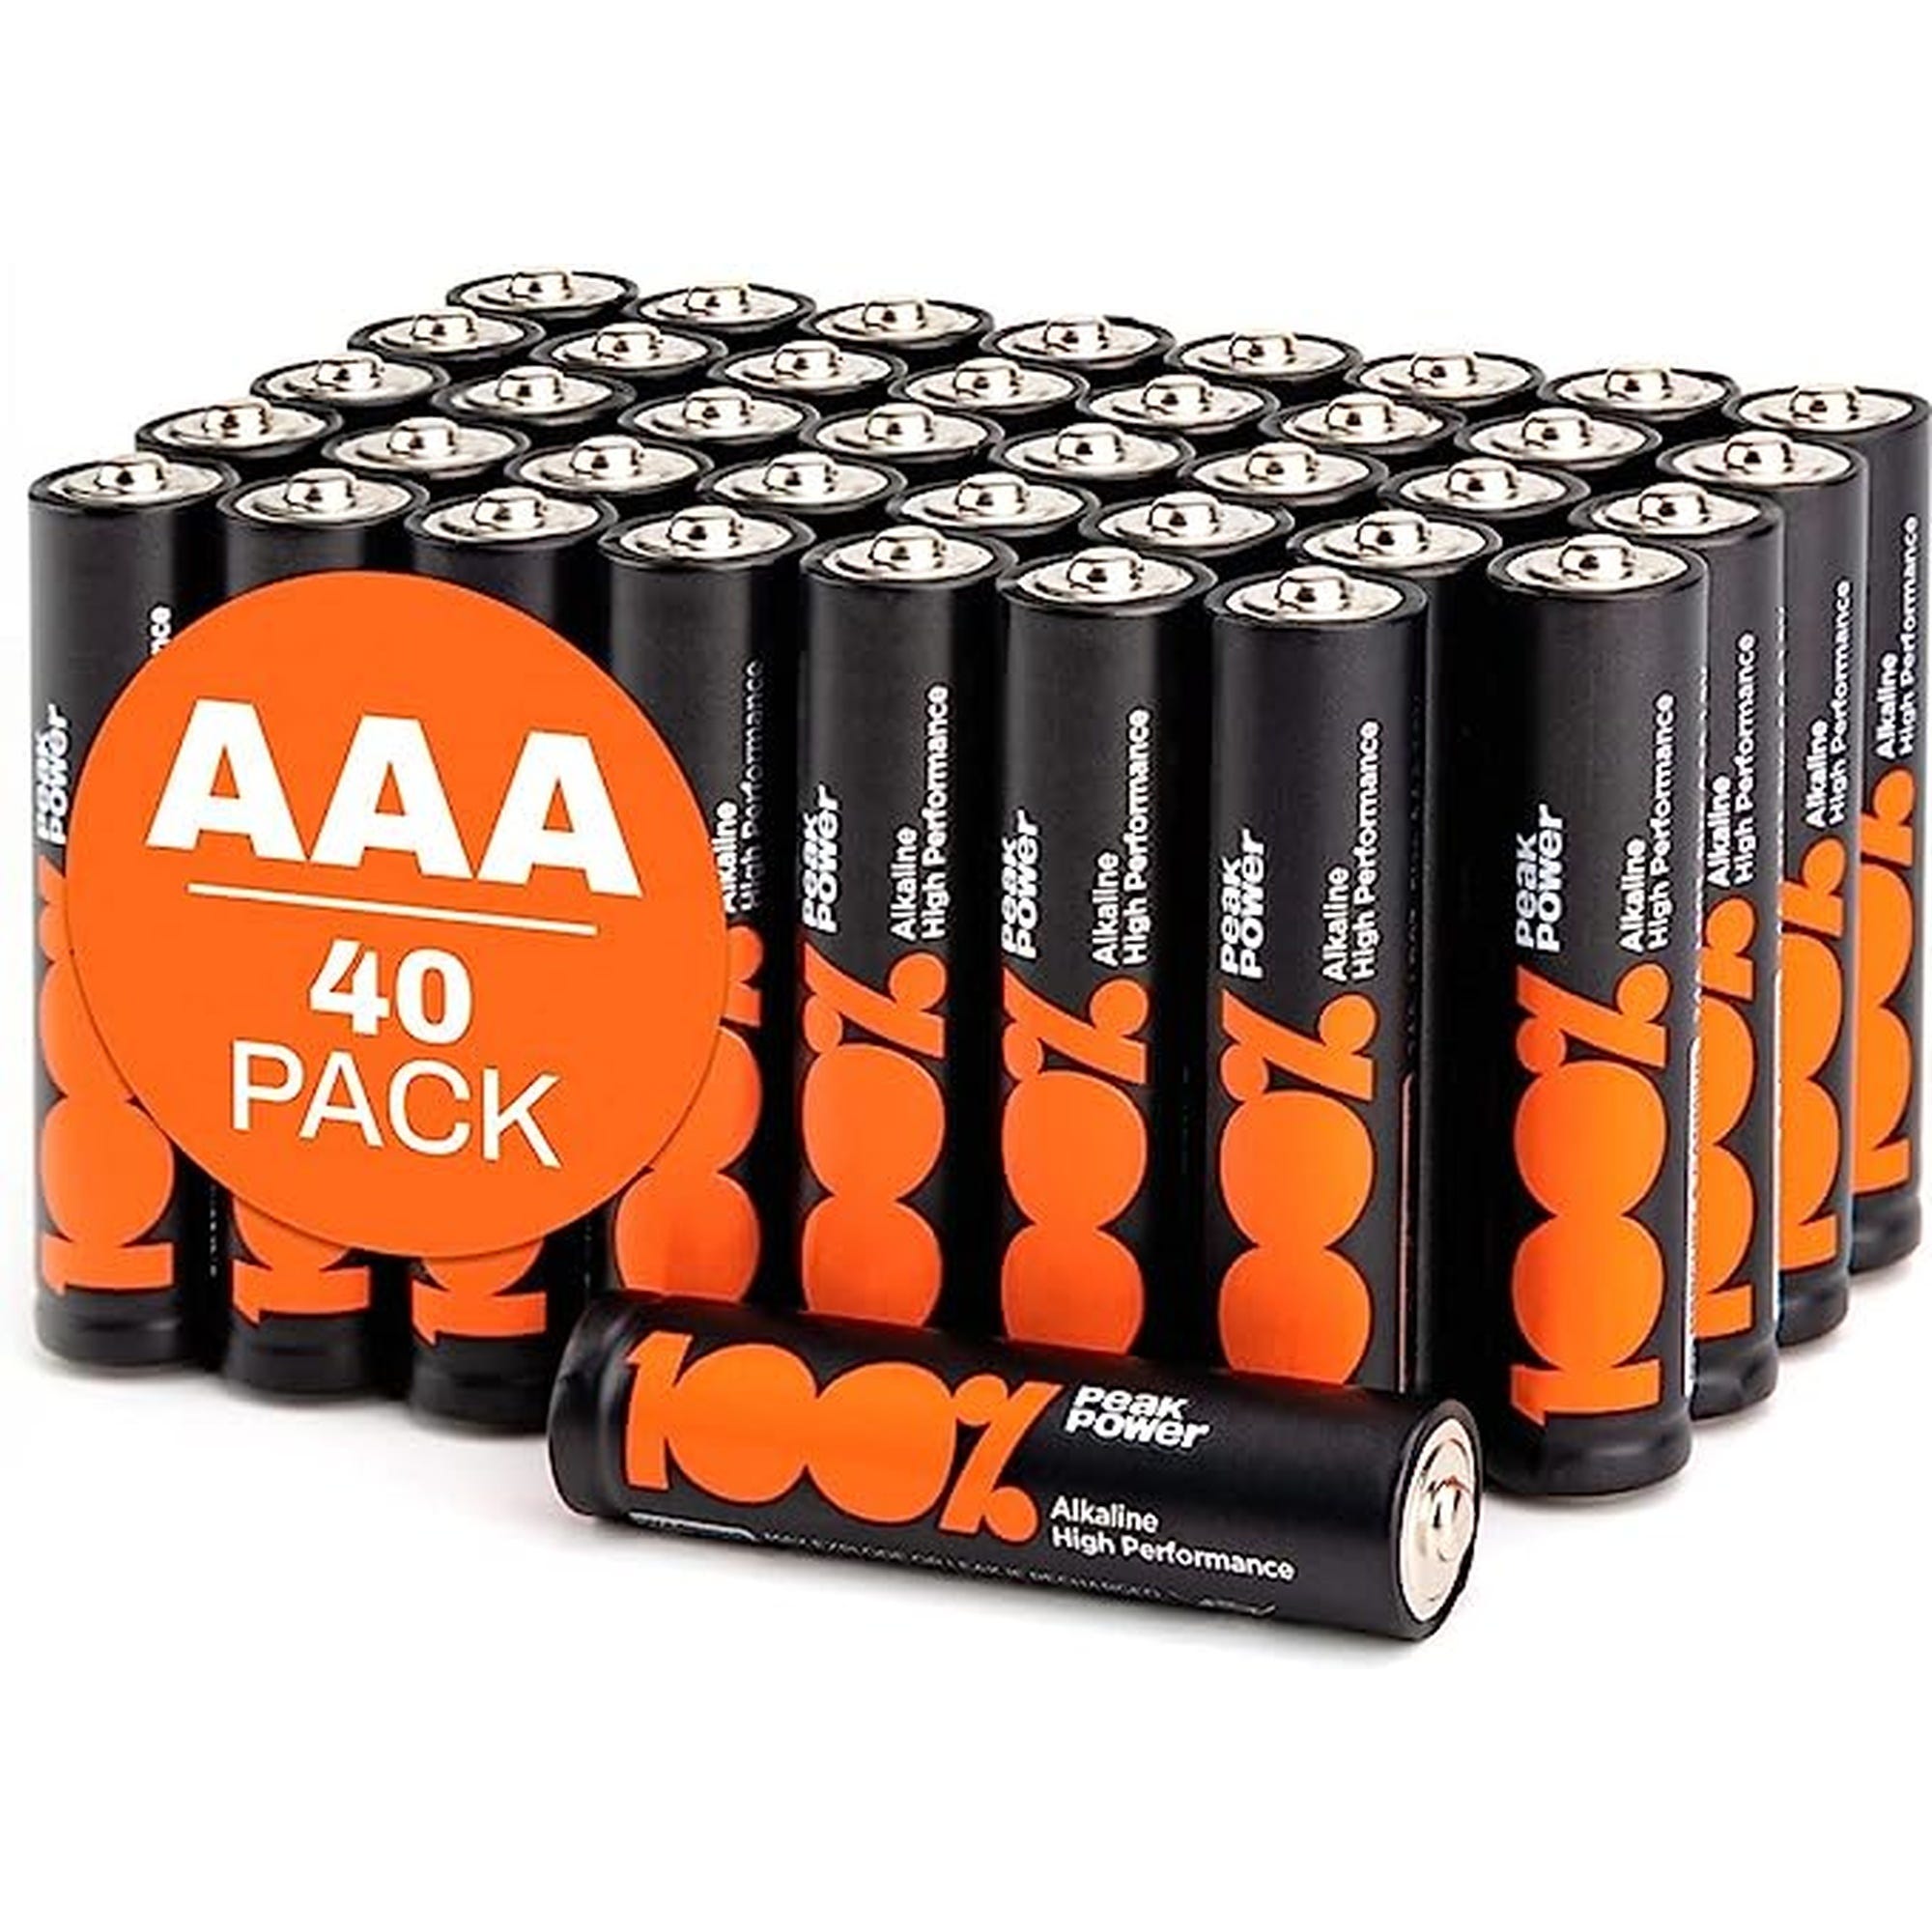 Piles AAA - Lot de 40, 100% PEAKPOWER, Batteries Alcalines AAA LR03 1,5v, Longue durée, haute performance, utilisation quotidienne